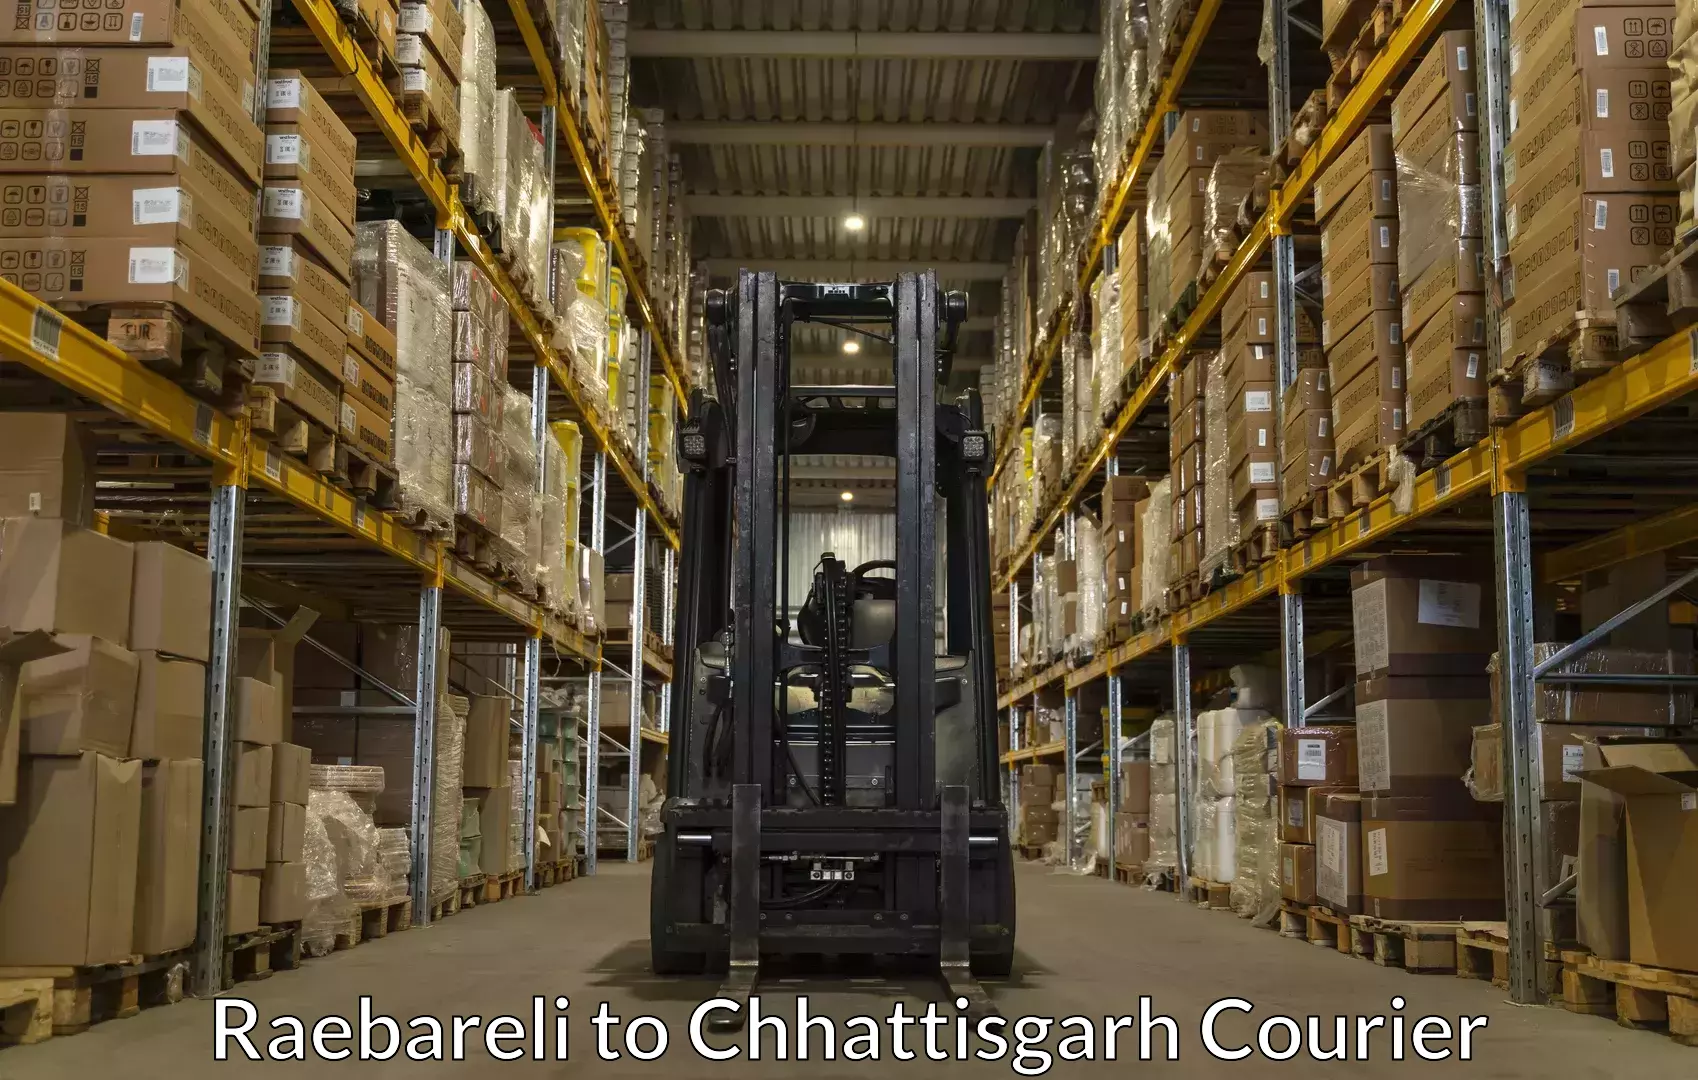 Luggage delivery network Raebareli to Bijapur Chhattisgarh